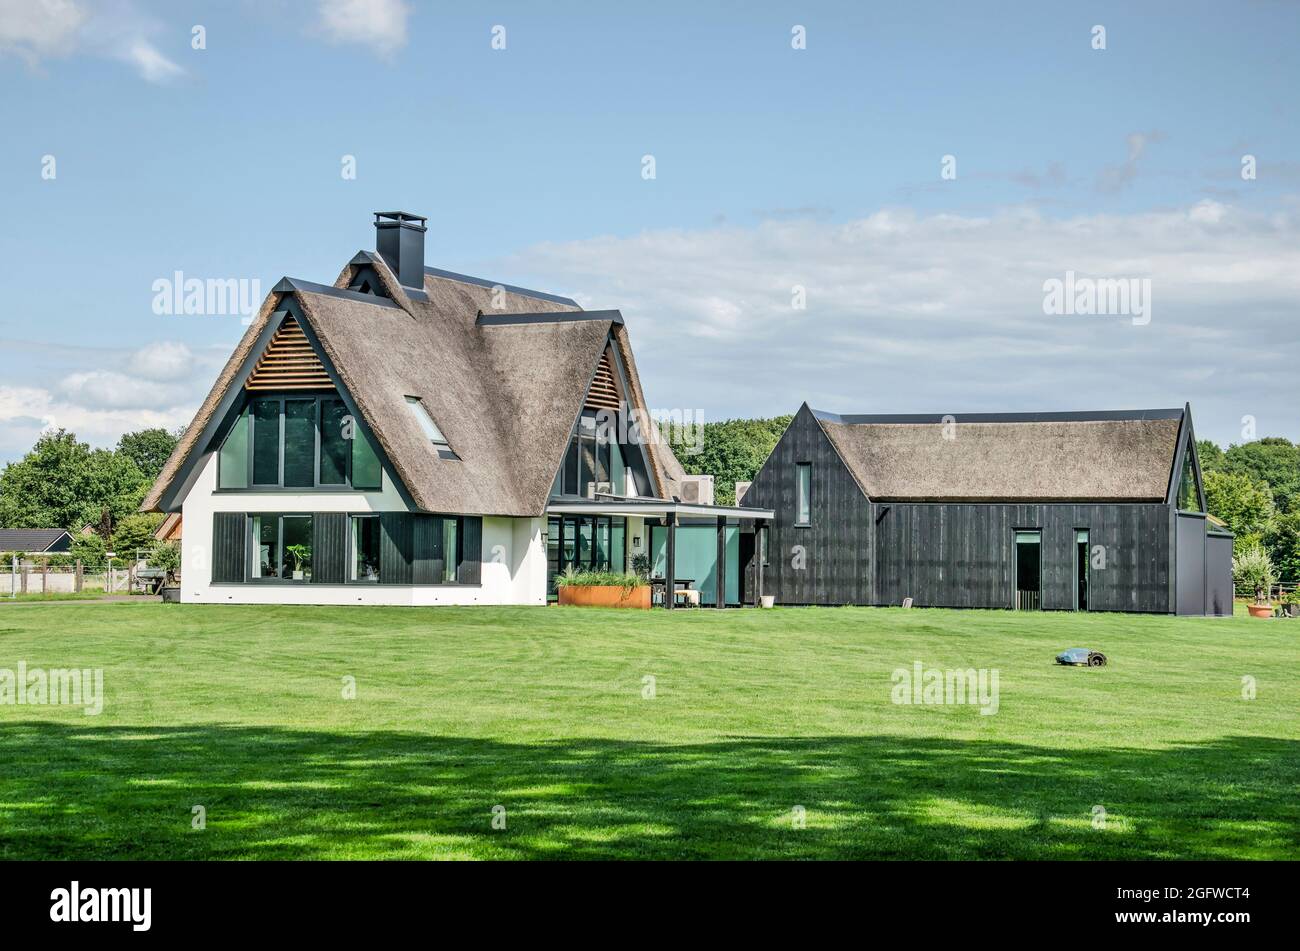 Heino, Niederlande, 7. August 2021: Moderne Villa mit traditionellen Materialien wie Stuck, Holz und einem Strohdach auf einem Rasen, der von einem Roboter kurz gehalten wird Stockfoto